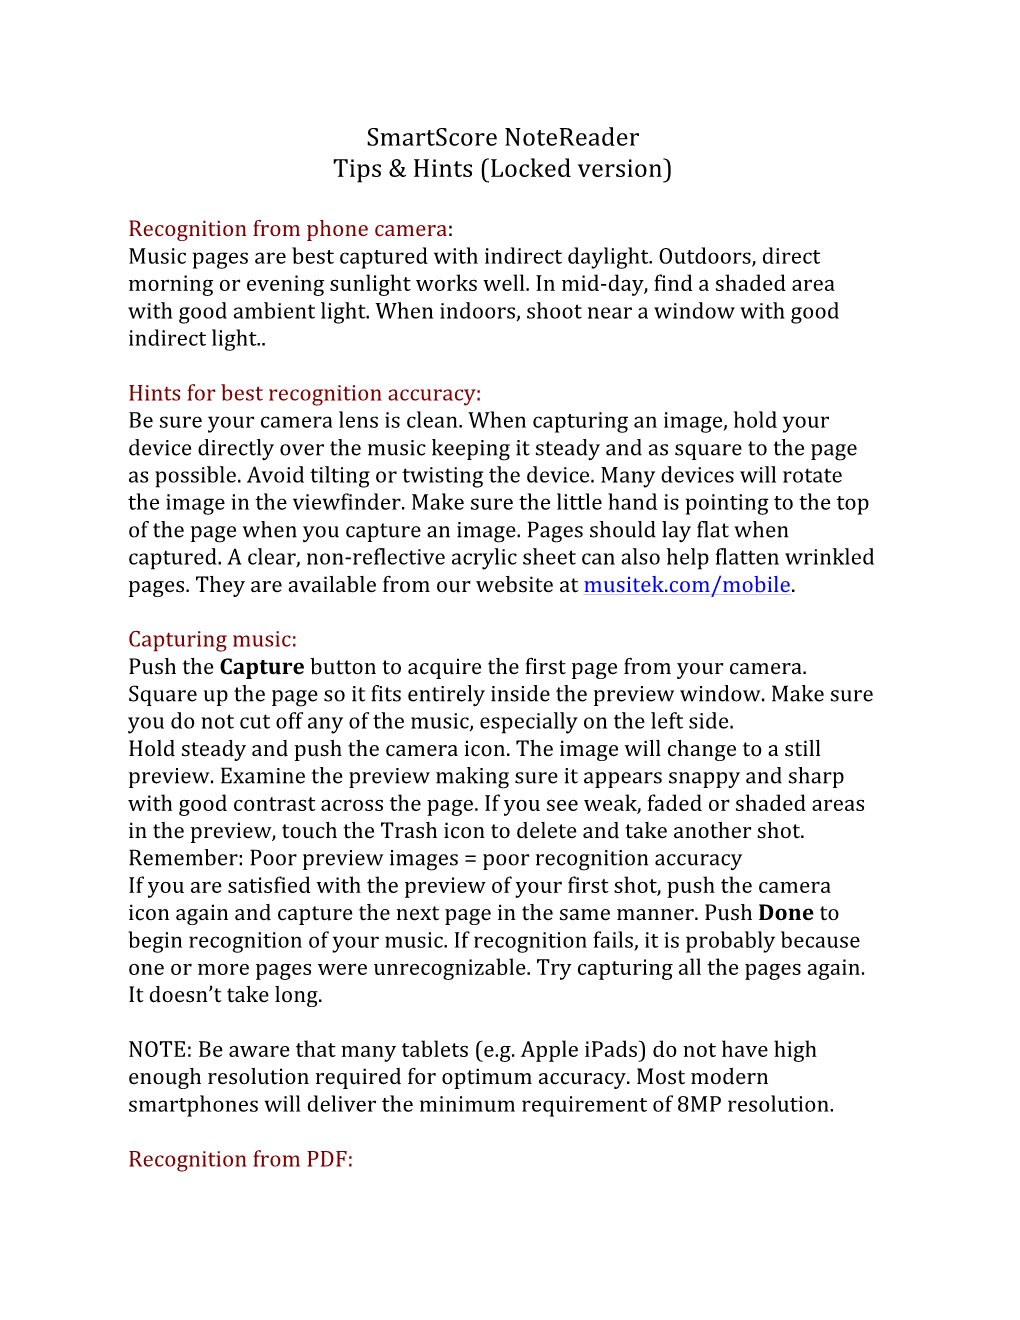 Smartscore Notereader Tips & Hints